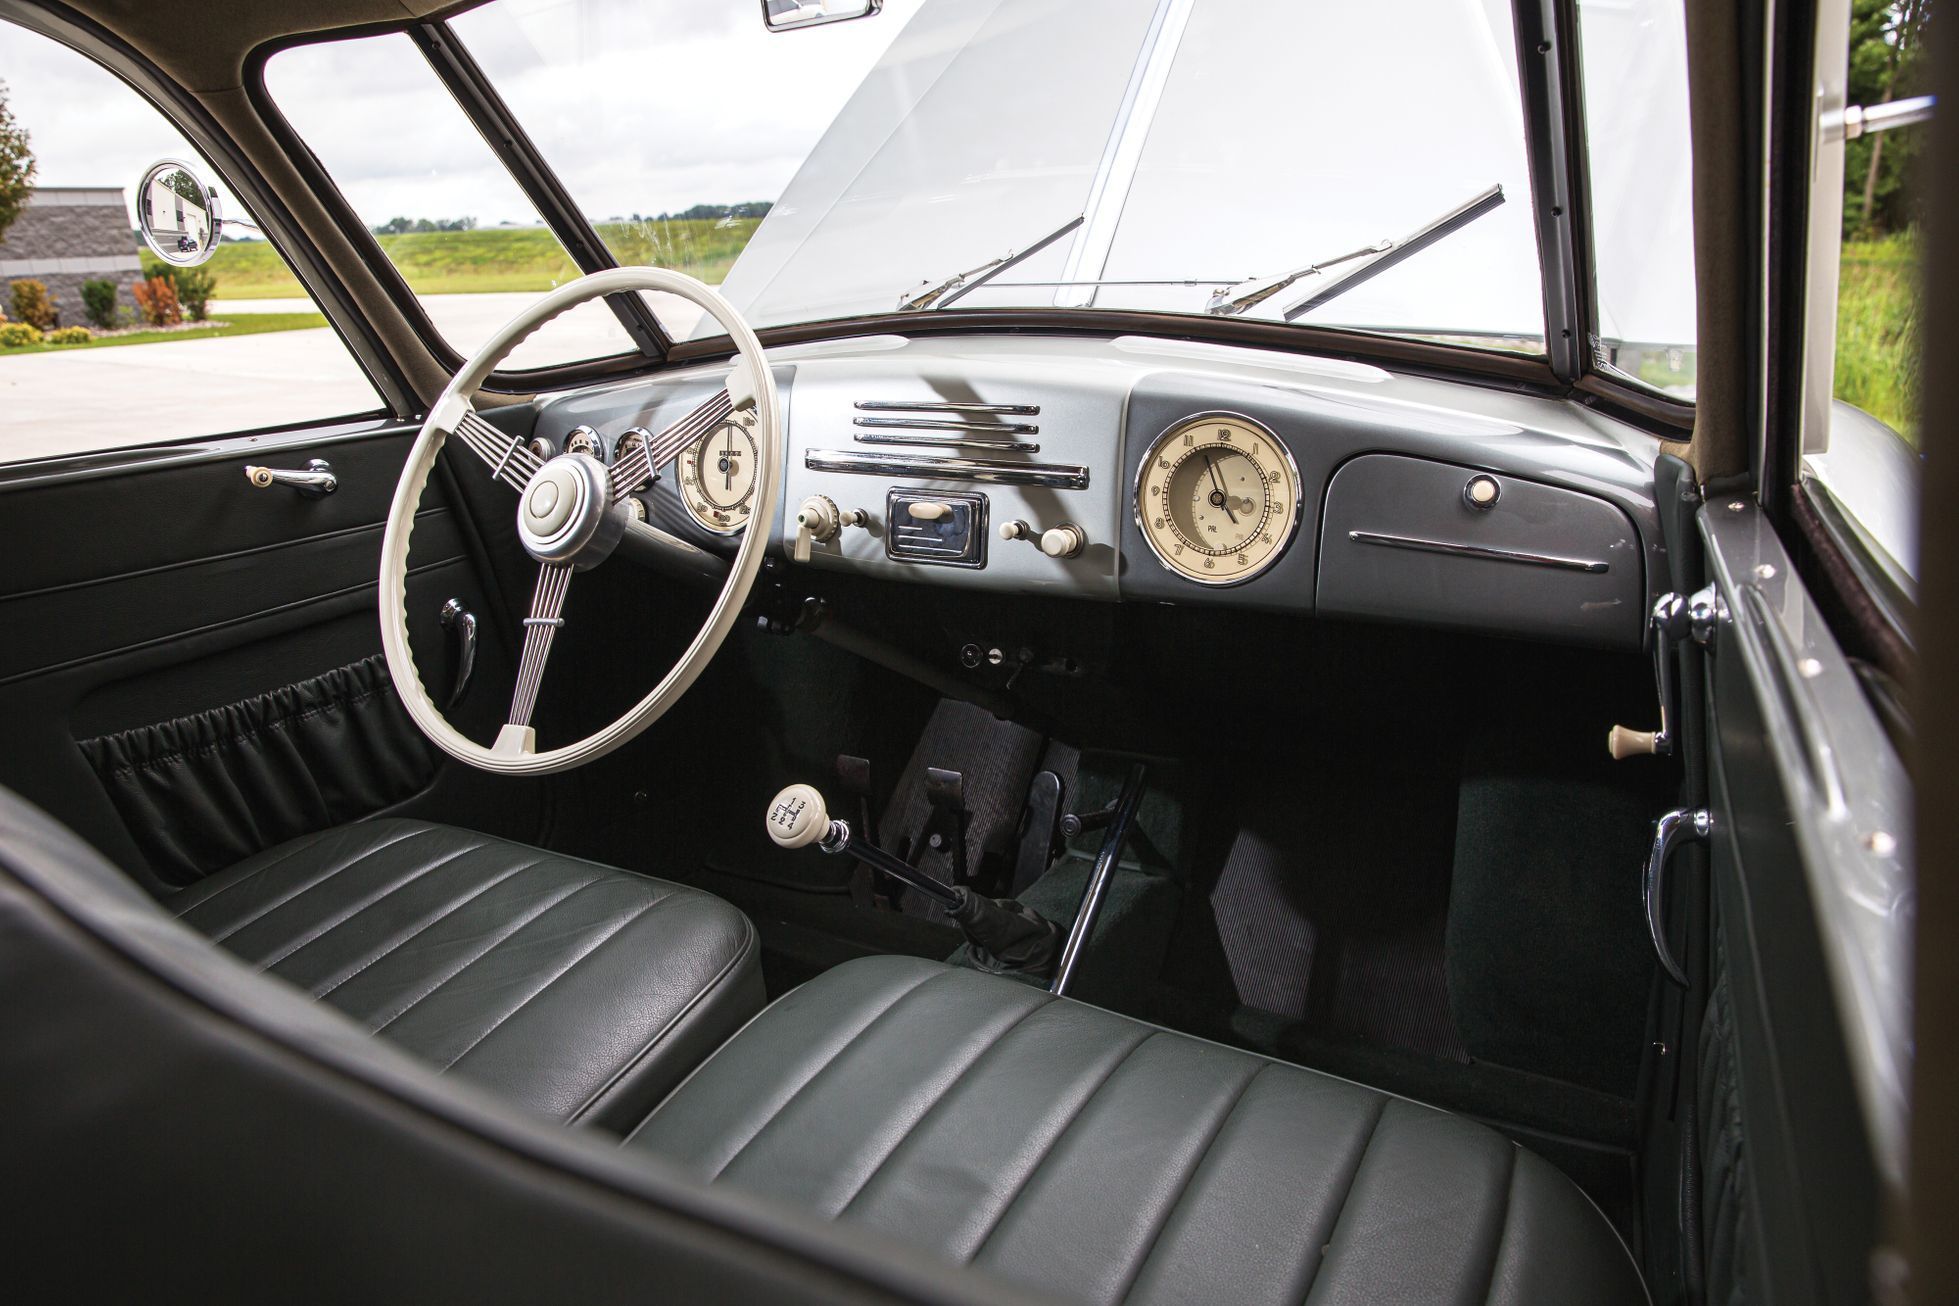 Tatra 87 aukce USA - NEPOUŽÍVAT DÁL